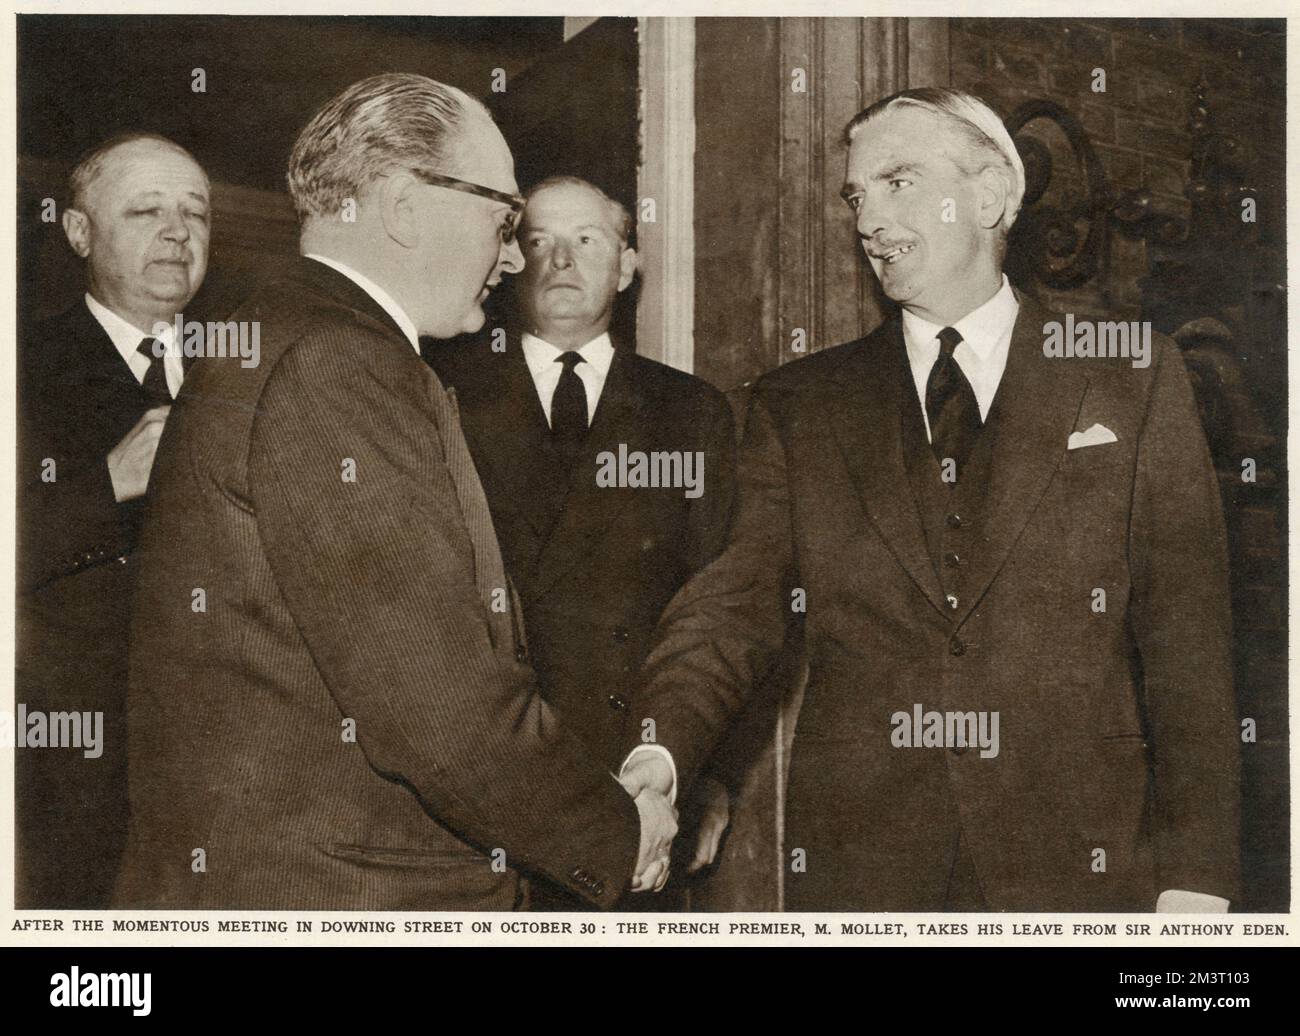 Sir Anthony Eden (rechts) schüttelt dem französischen Premierminister Guy Alcide Mollet (1905-1975) am 30. Oktober 1956 vor der Downing Street 10 die Hand, nachdem er über die Invasion Israels in Ägypten gesprochen hatte. Stockfoto